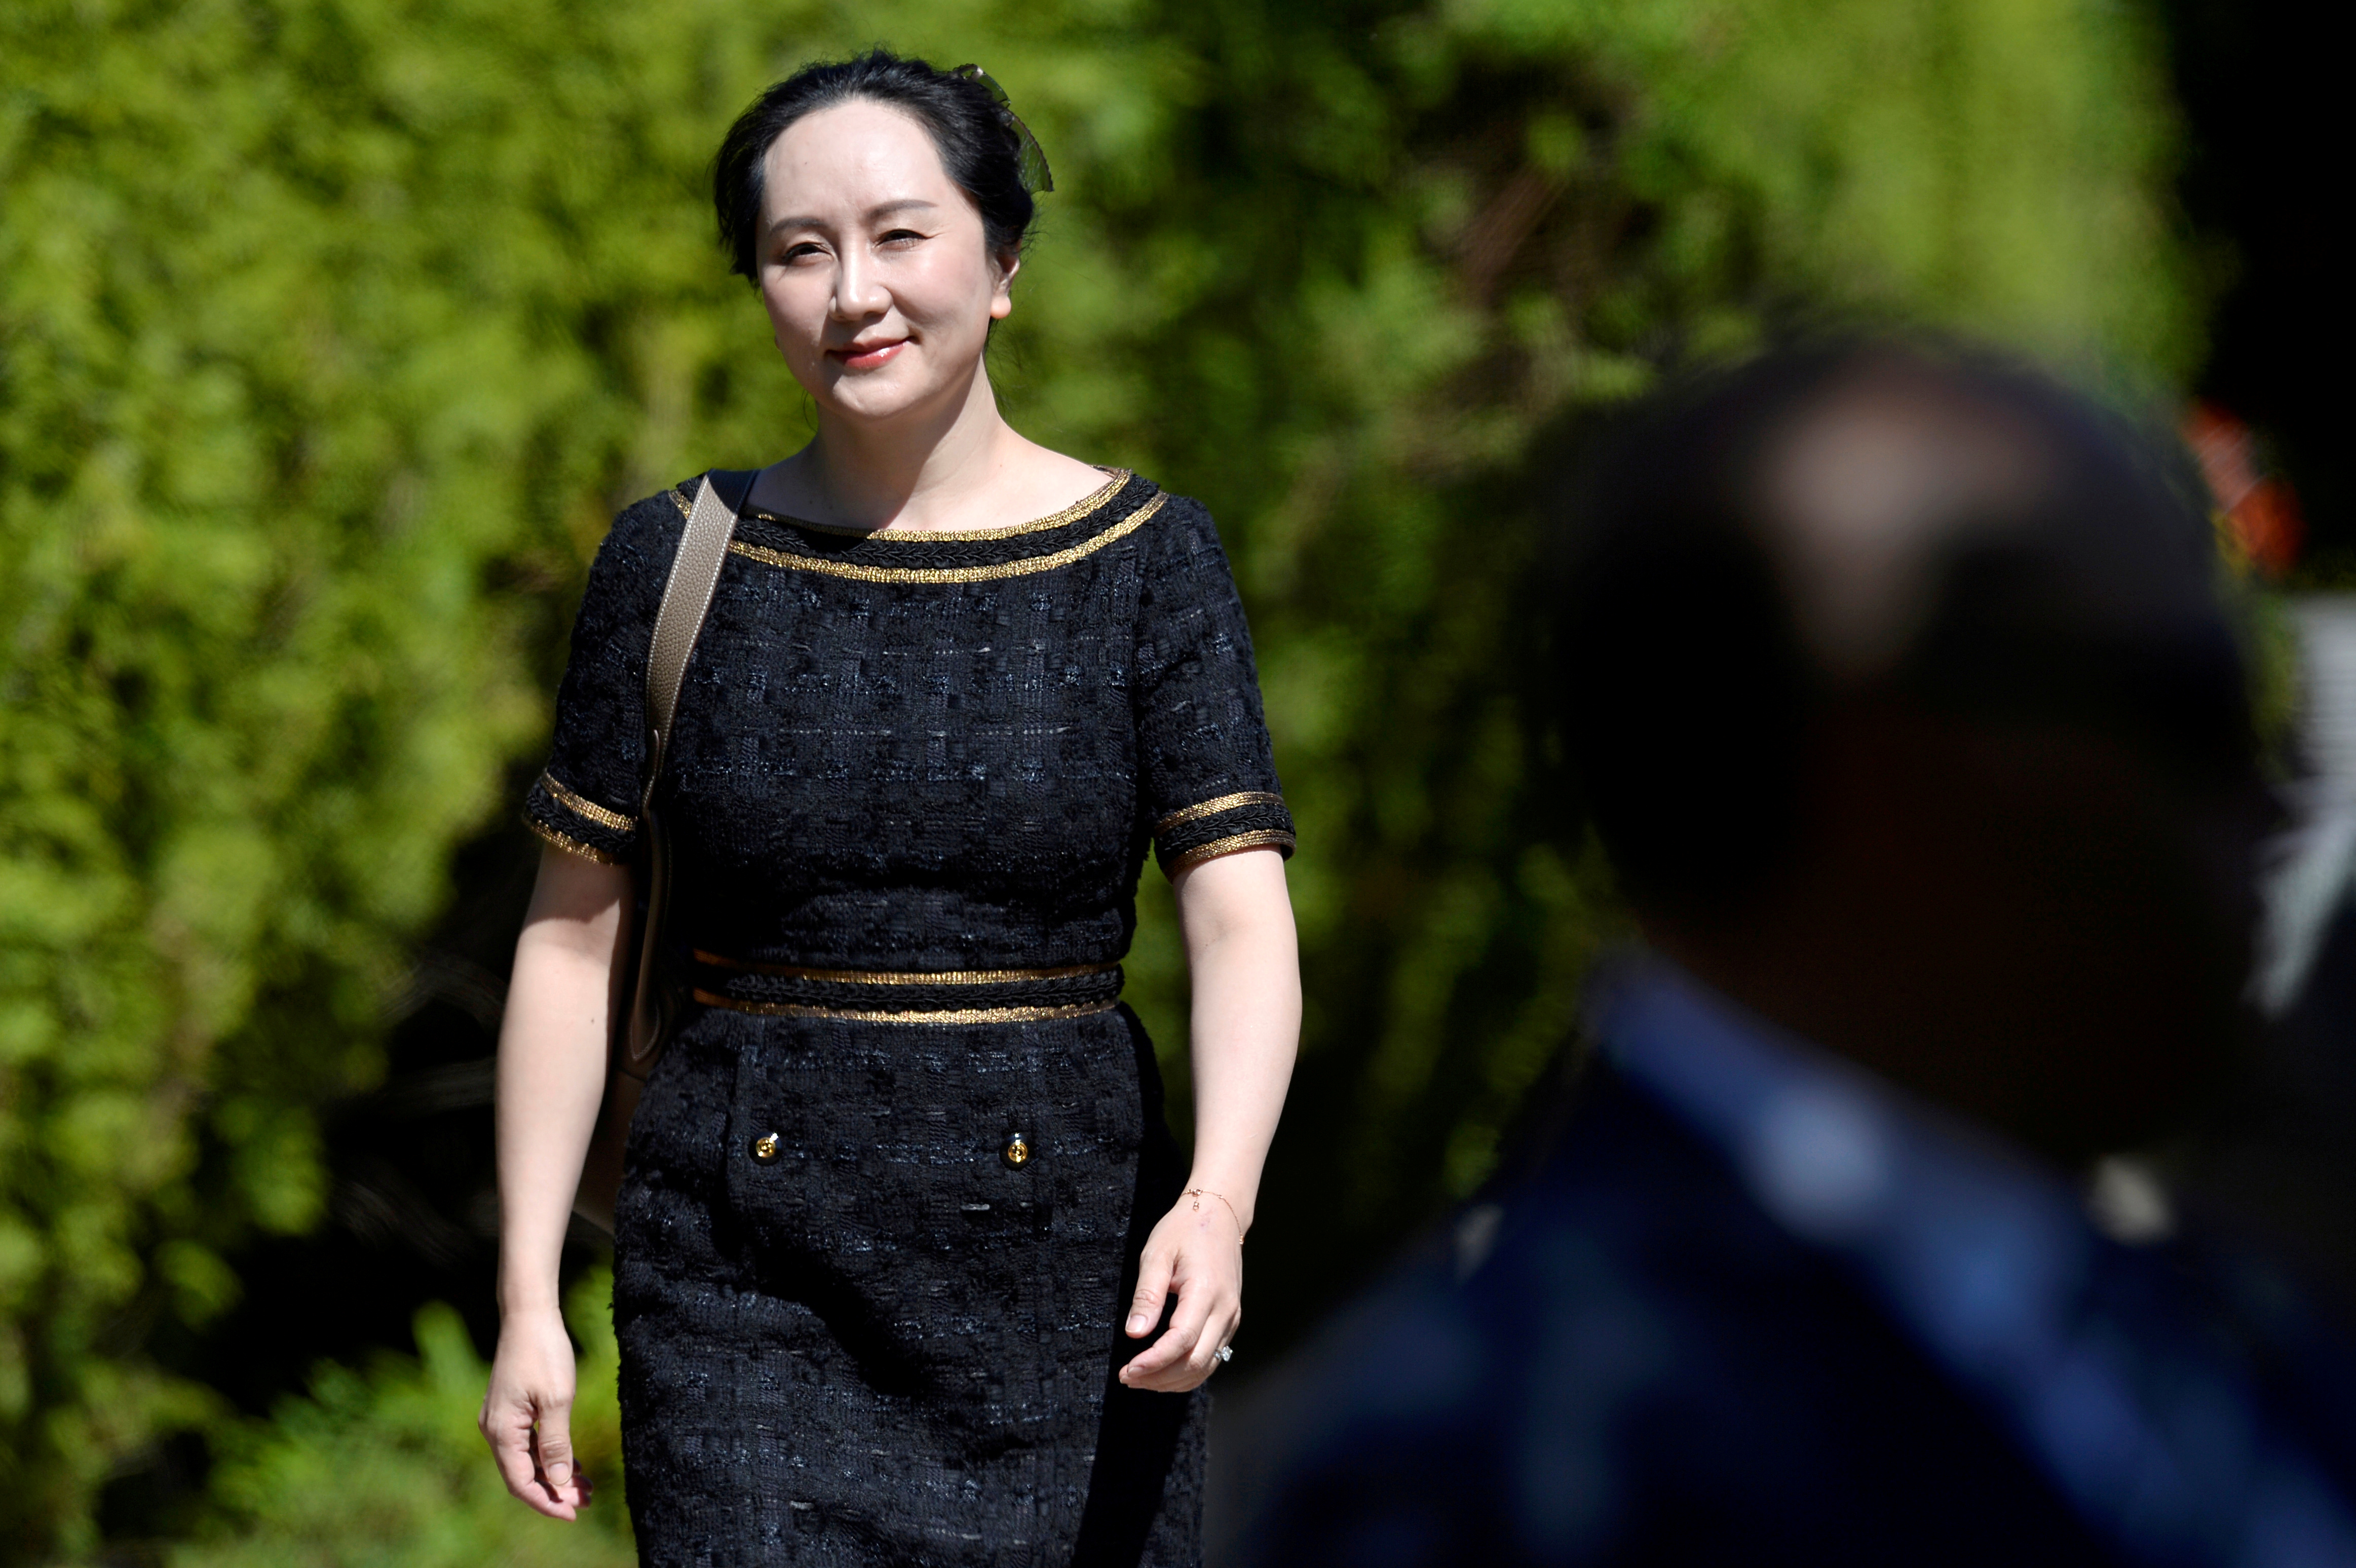 Meng Wanzhou, directora financiera de Huawei Technologies, abandona su hogar para asistir a una audiencia en Vancouver, Canadá, el pasado 27 de mayo (Reuters)